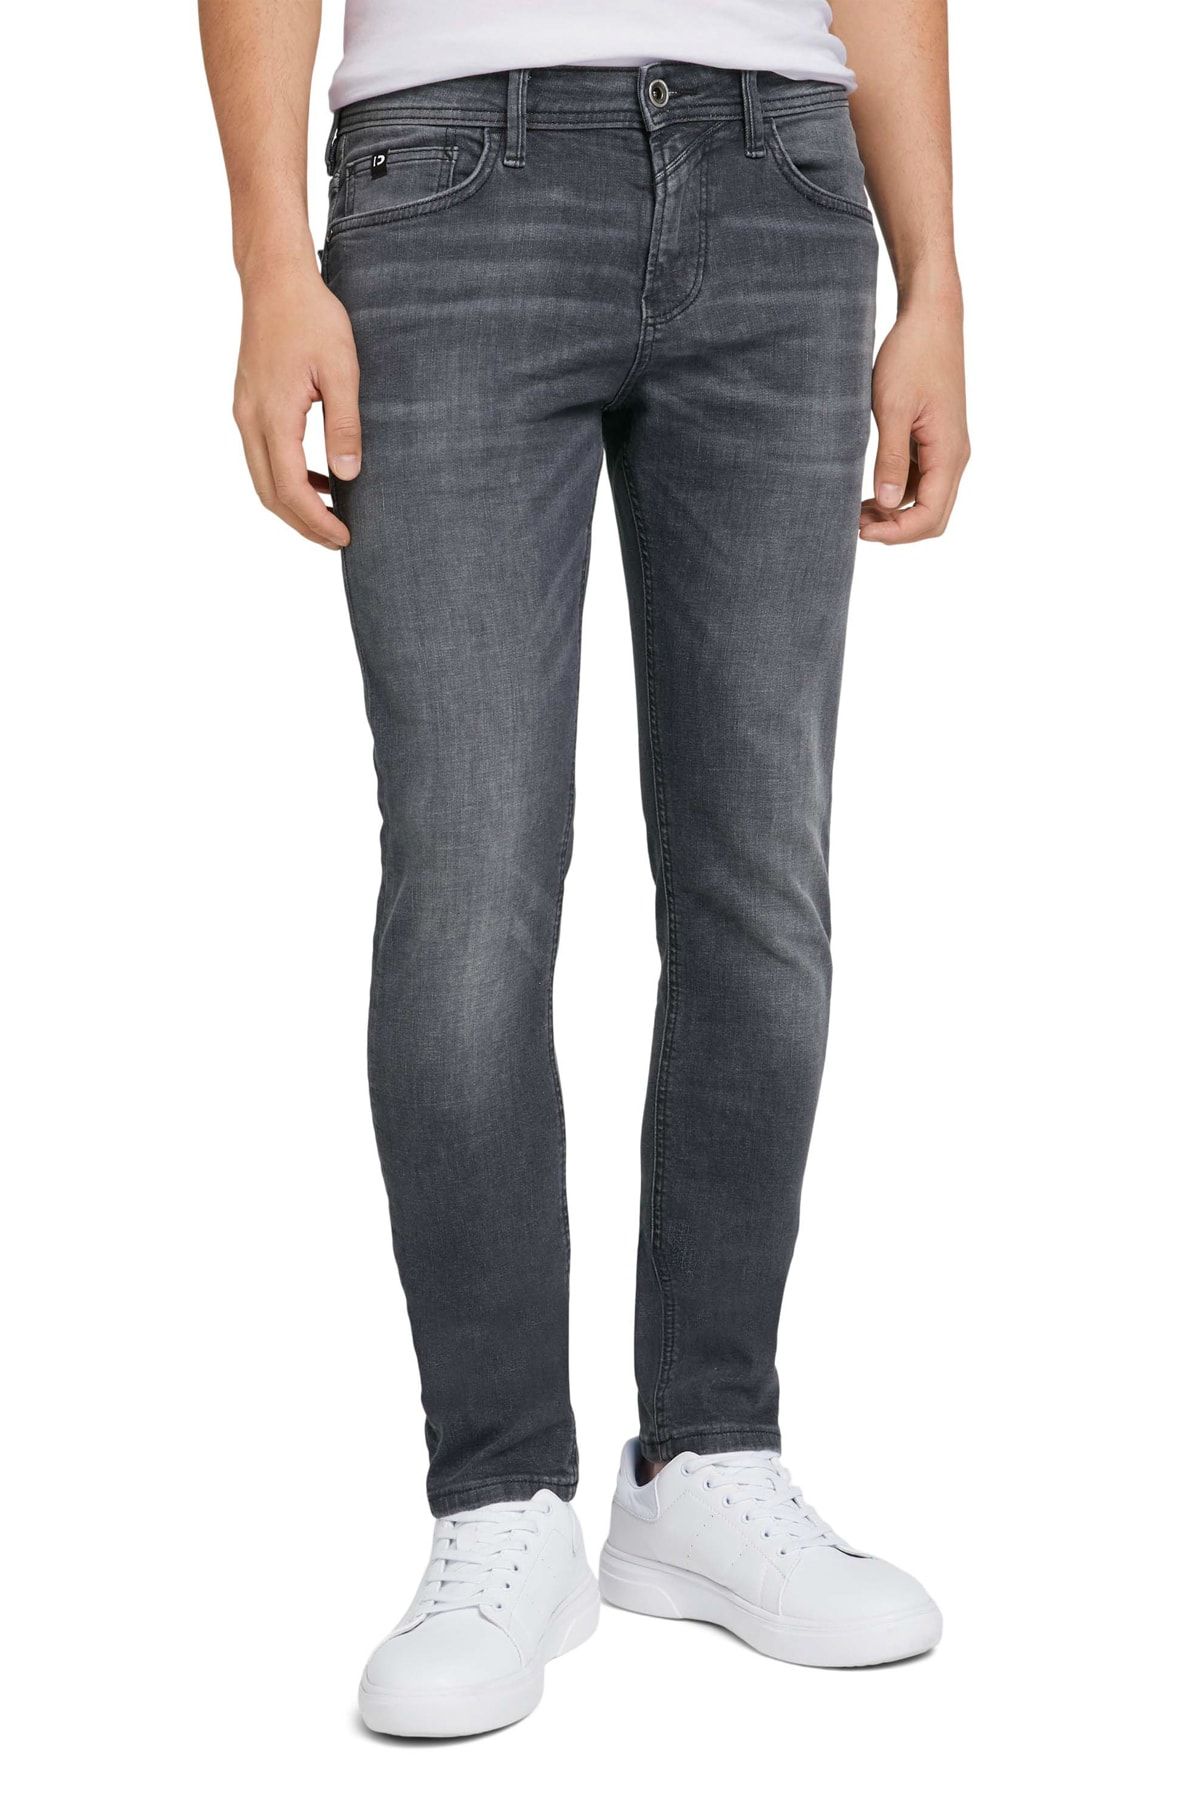 Tom Tailor Denim Jeans - - - Trendyol Gray Skinny